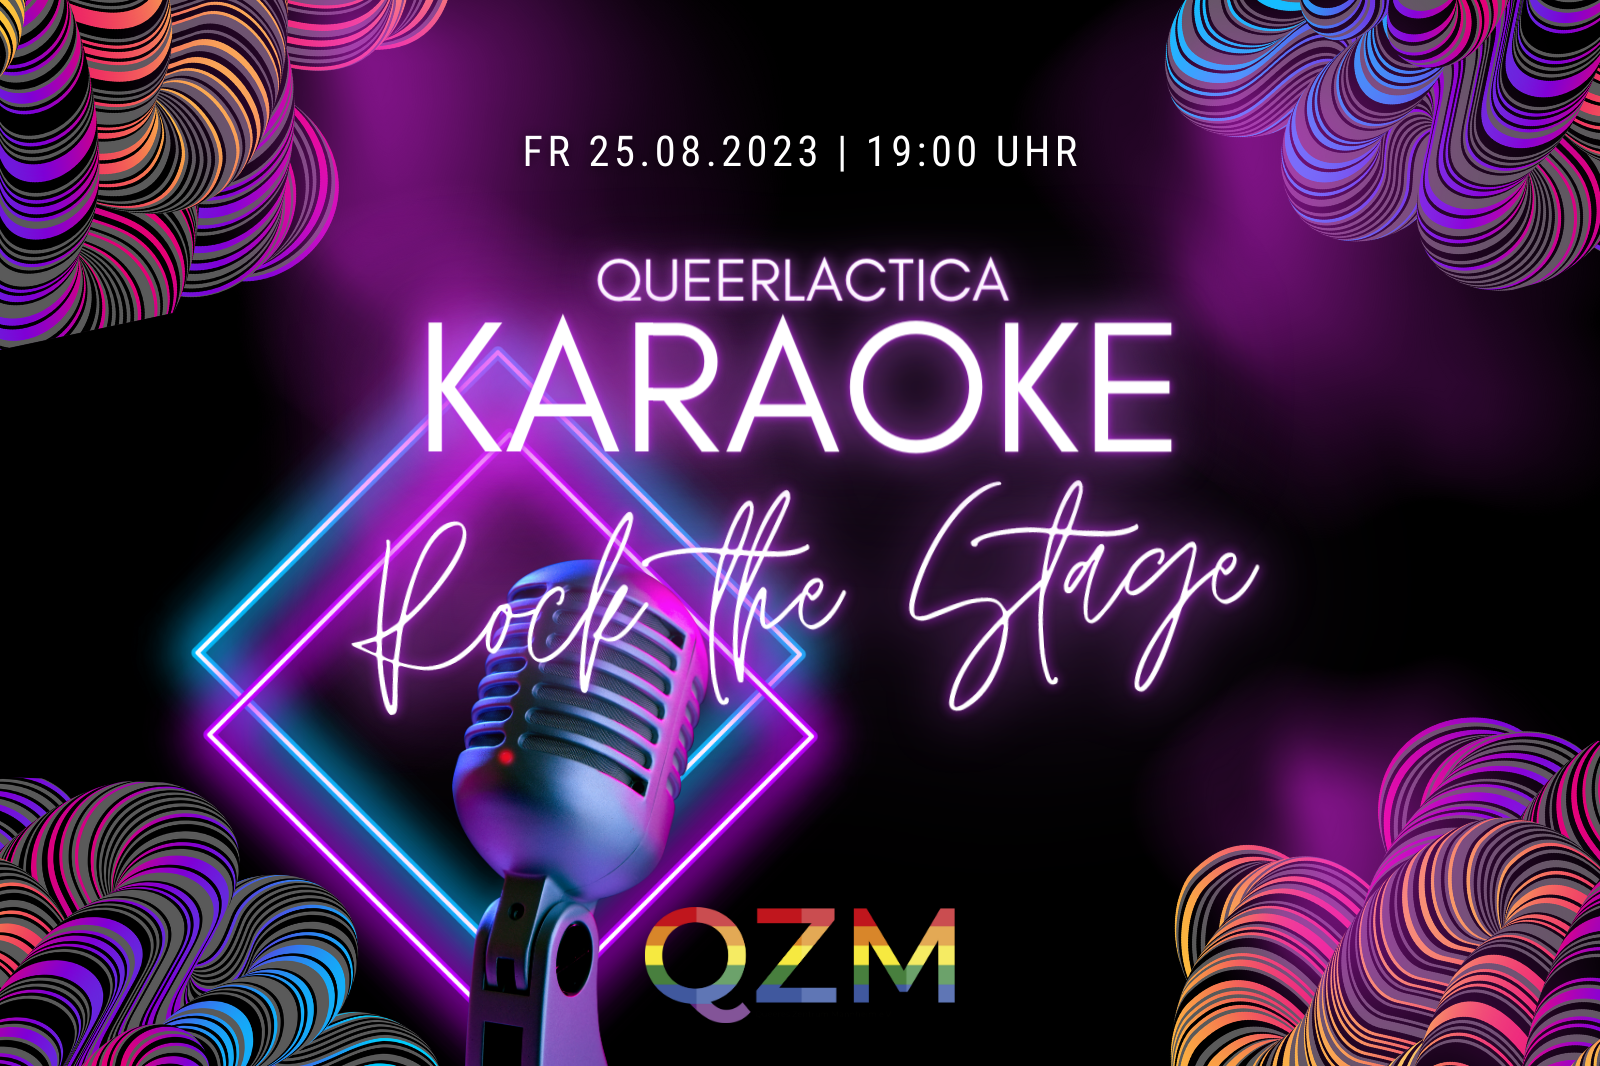 schwarzer Hintergrund, davor bunte Schnörkel und ein Mikrofon. Text: Queerlactica Karaoke, Rock the Stage, Freitag, 25.08. ab 19 Uhr